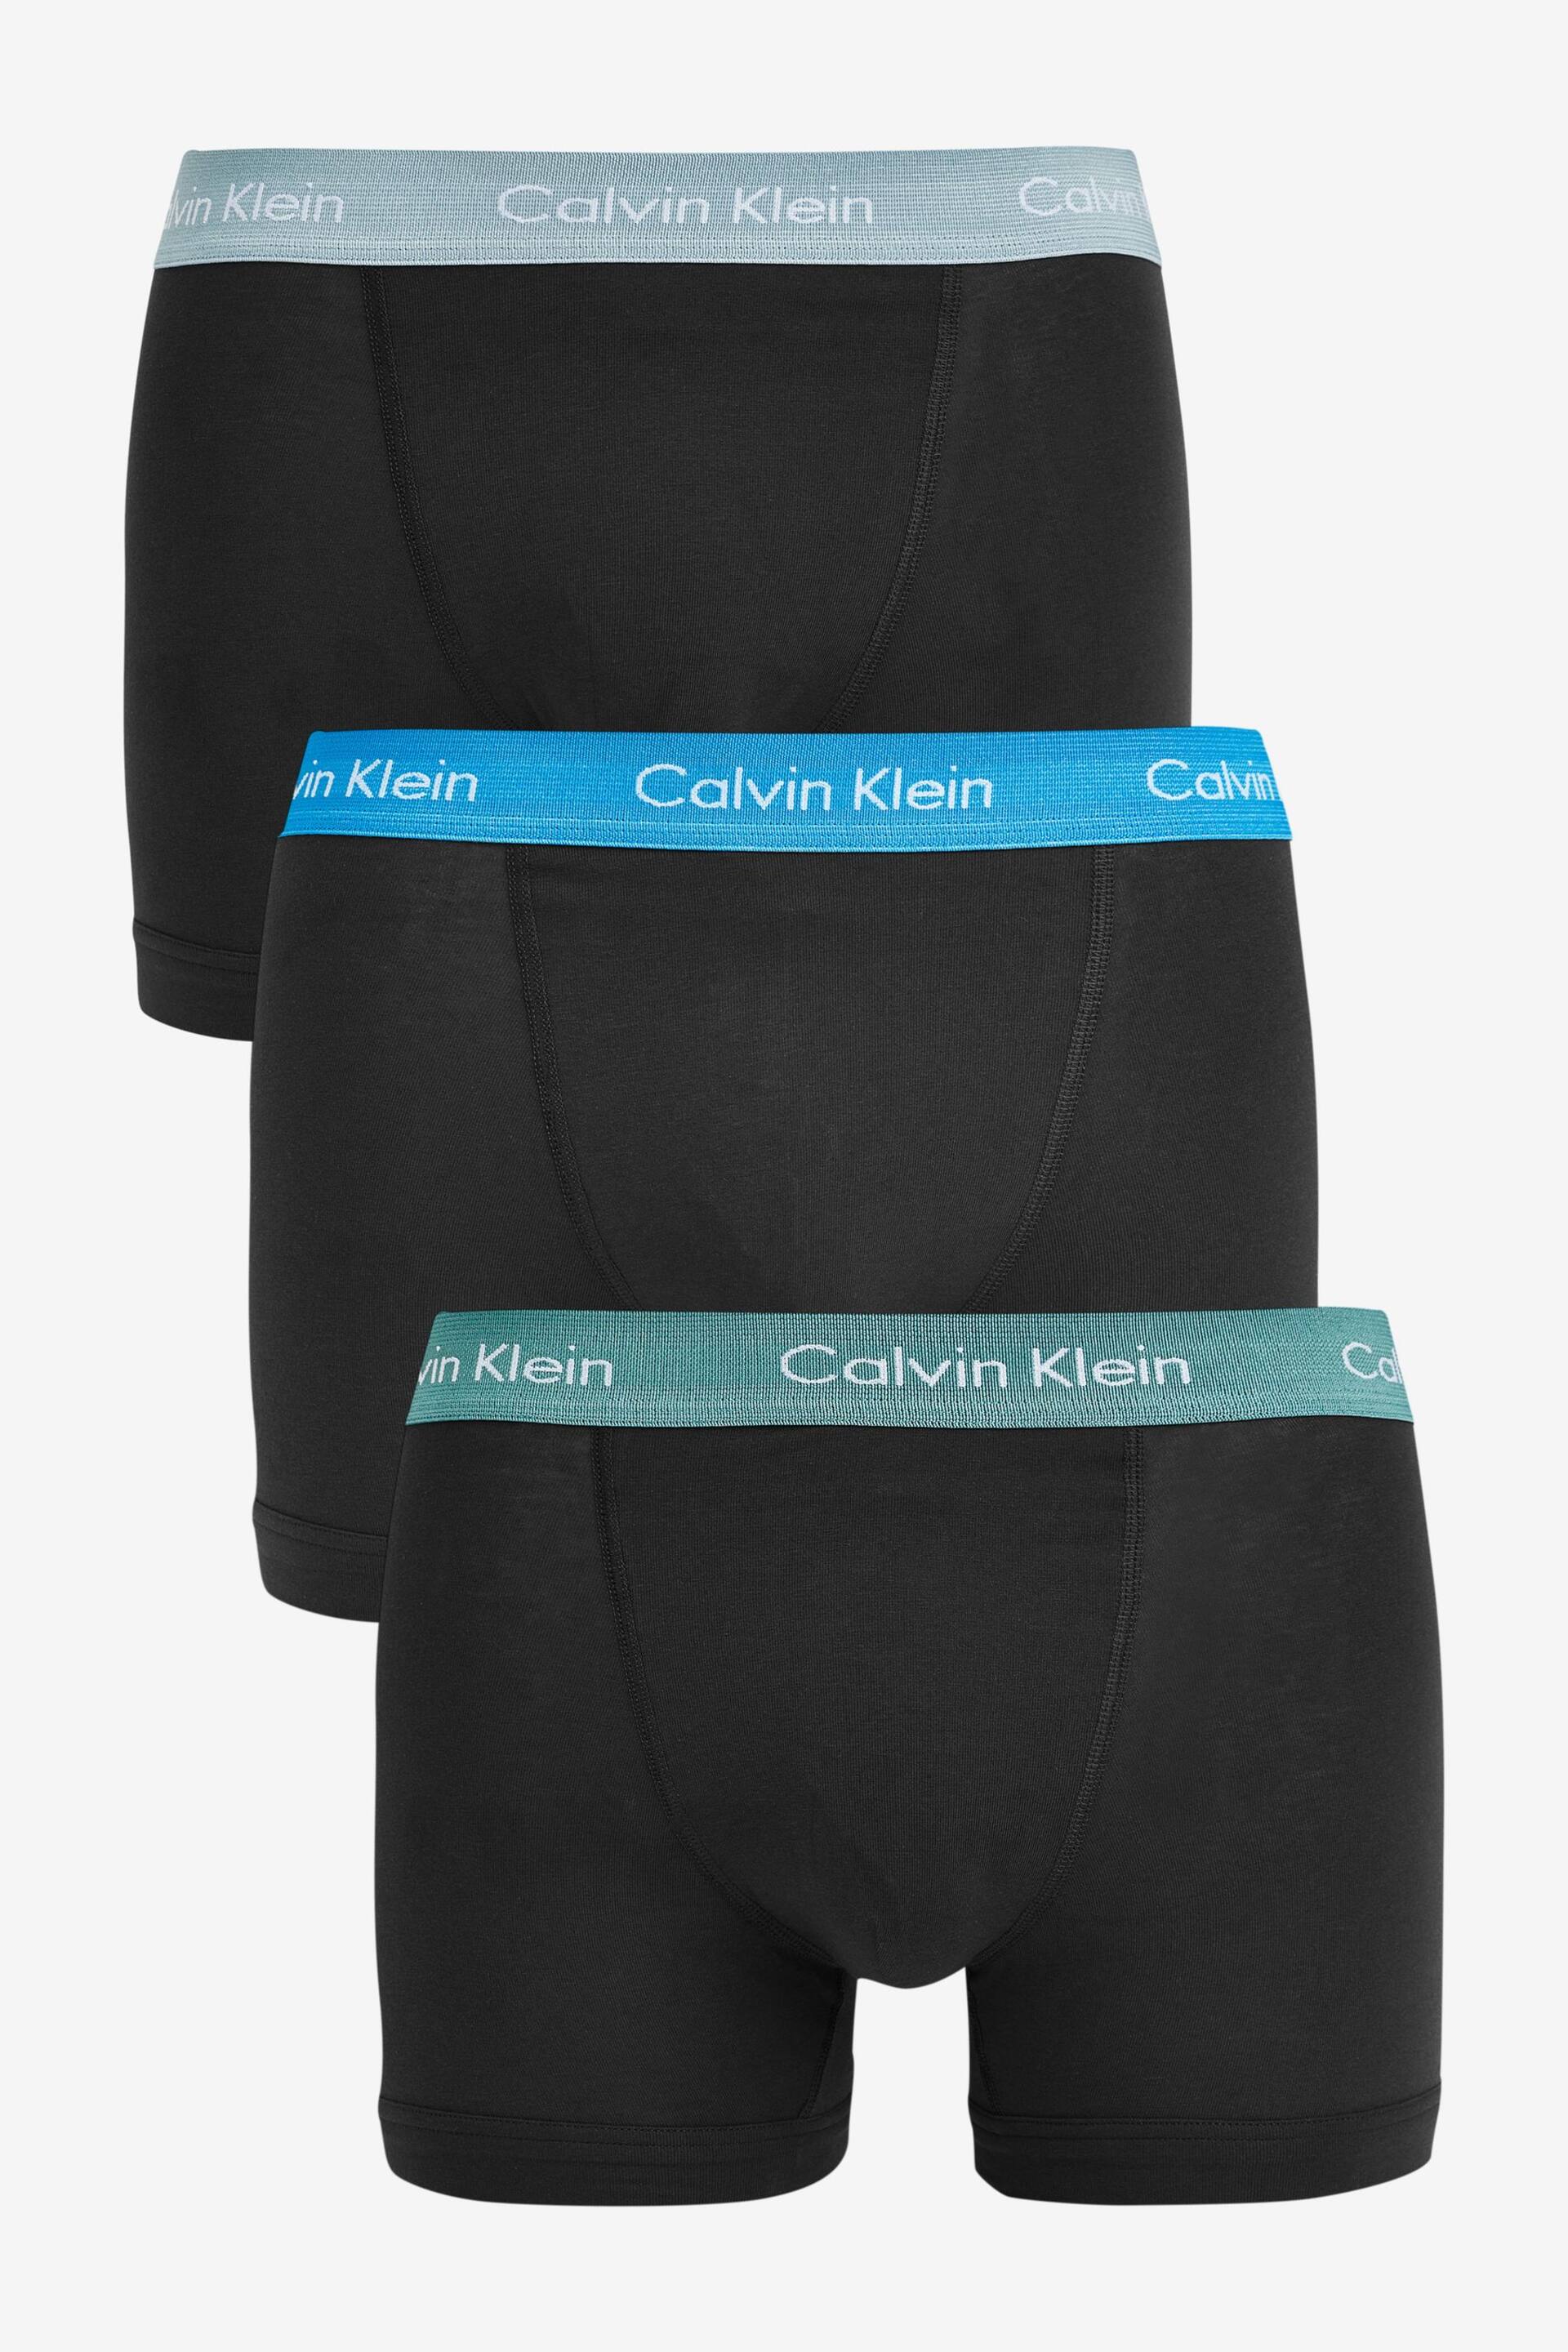 Calvin Klein Black Trunks 5 Pack - Image 1 of 4